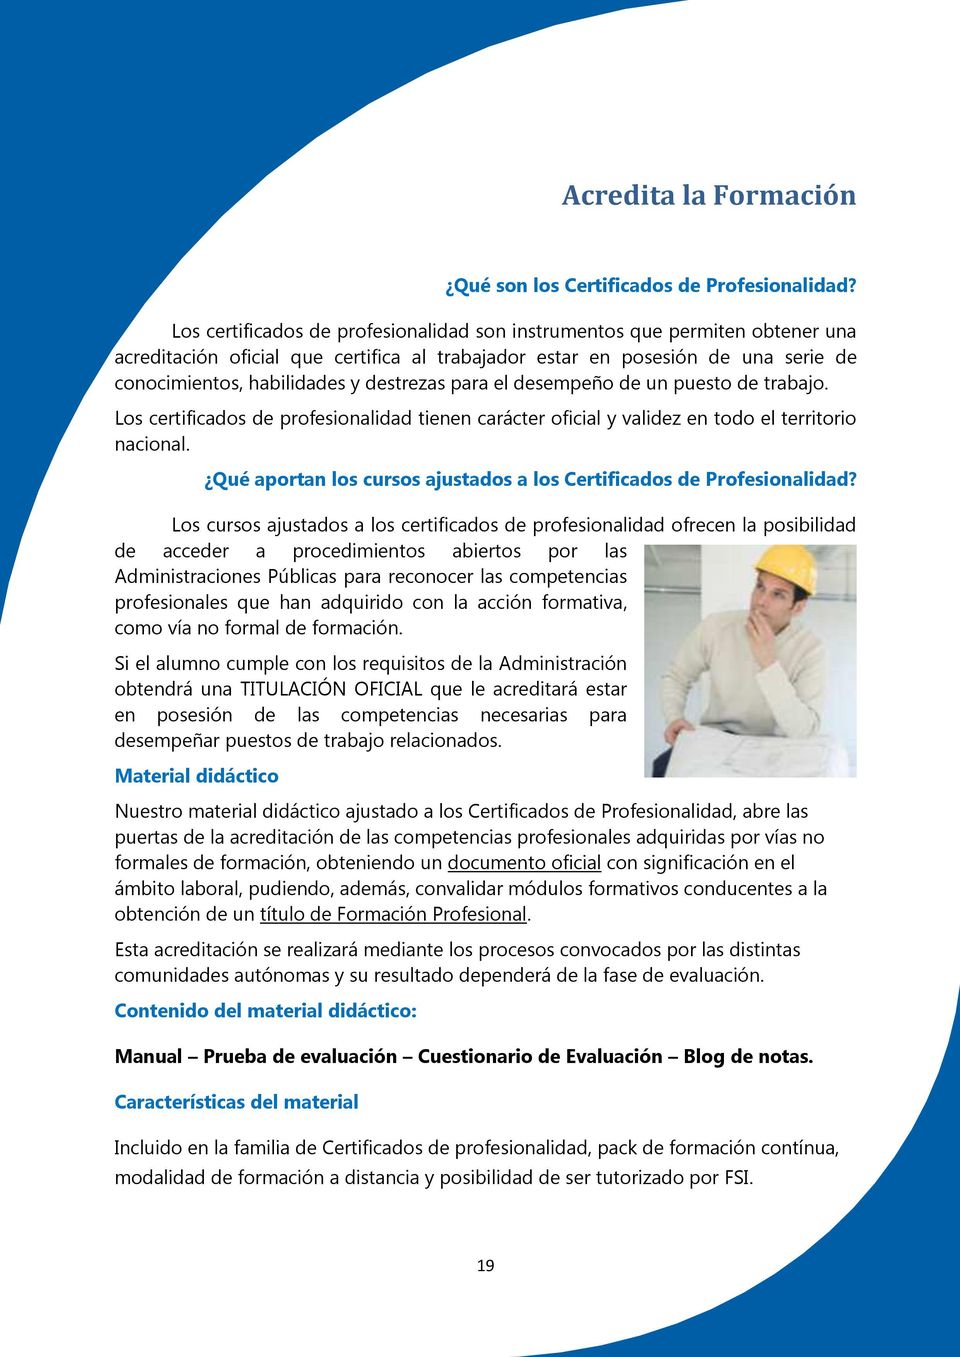 para el desempeño de un puesto de trabajo. Los certificados de profesionalidad tienen carácter oficial y validez en todo el territorio nacional.